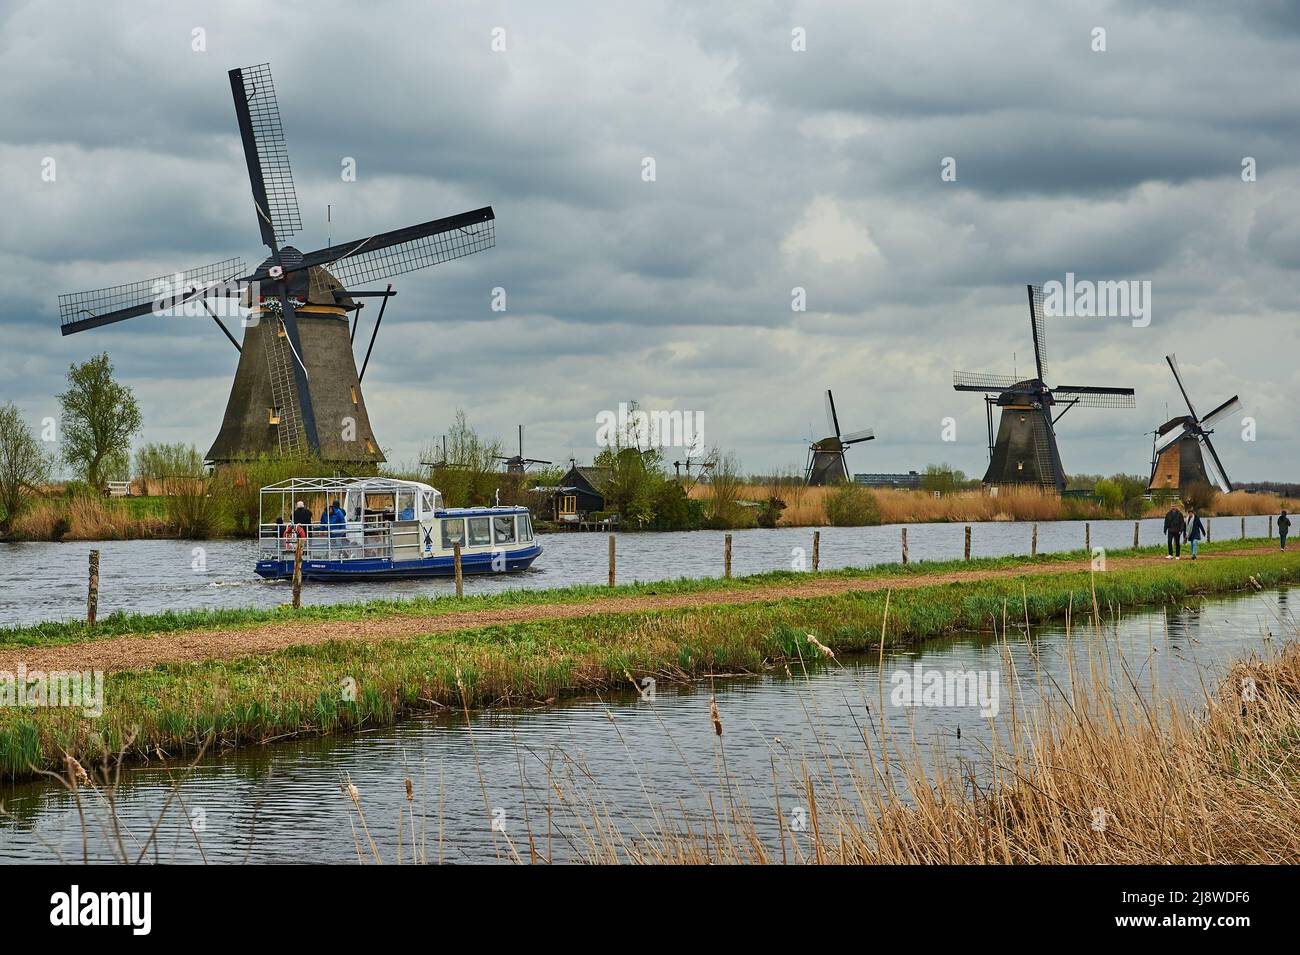 Les moulins à vent de Kinderdijk, en Hollande-Méridionale, aux pays-Bas, bordent le Molentocht. Ce site classé au patrimoine mondial de l'UNESCO se trouve au nord d'Alblasserdam. Banque D'Images